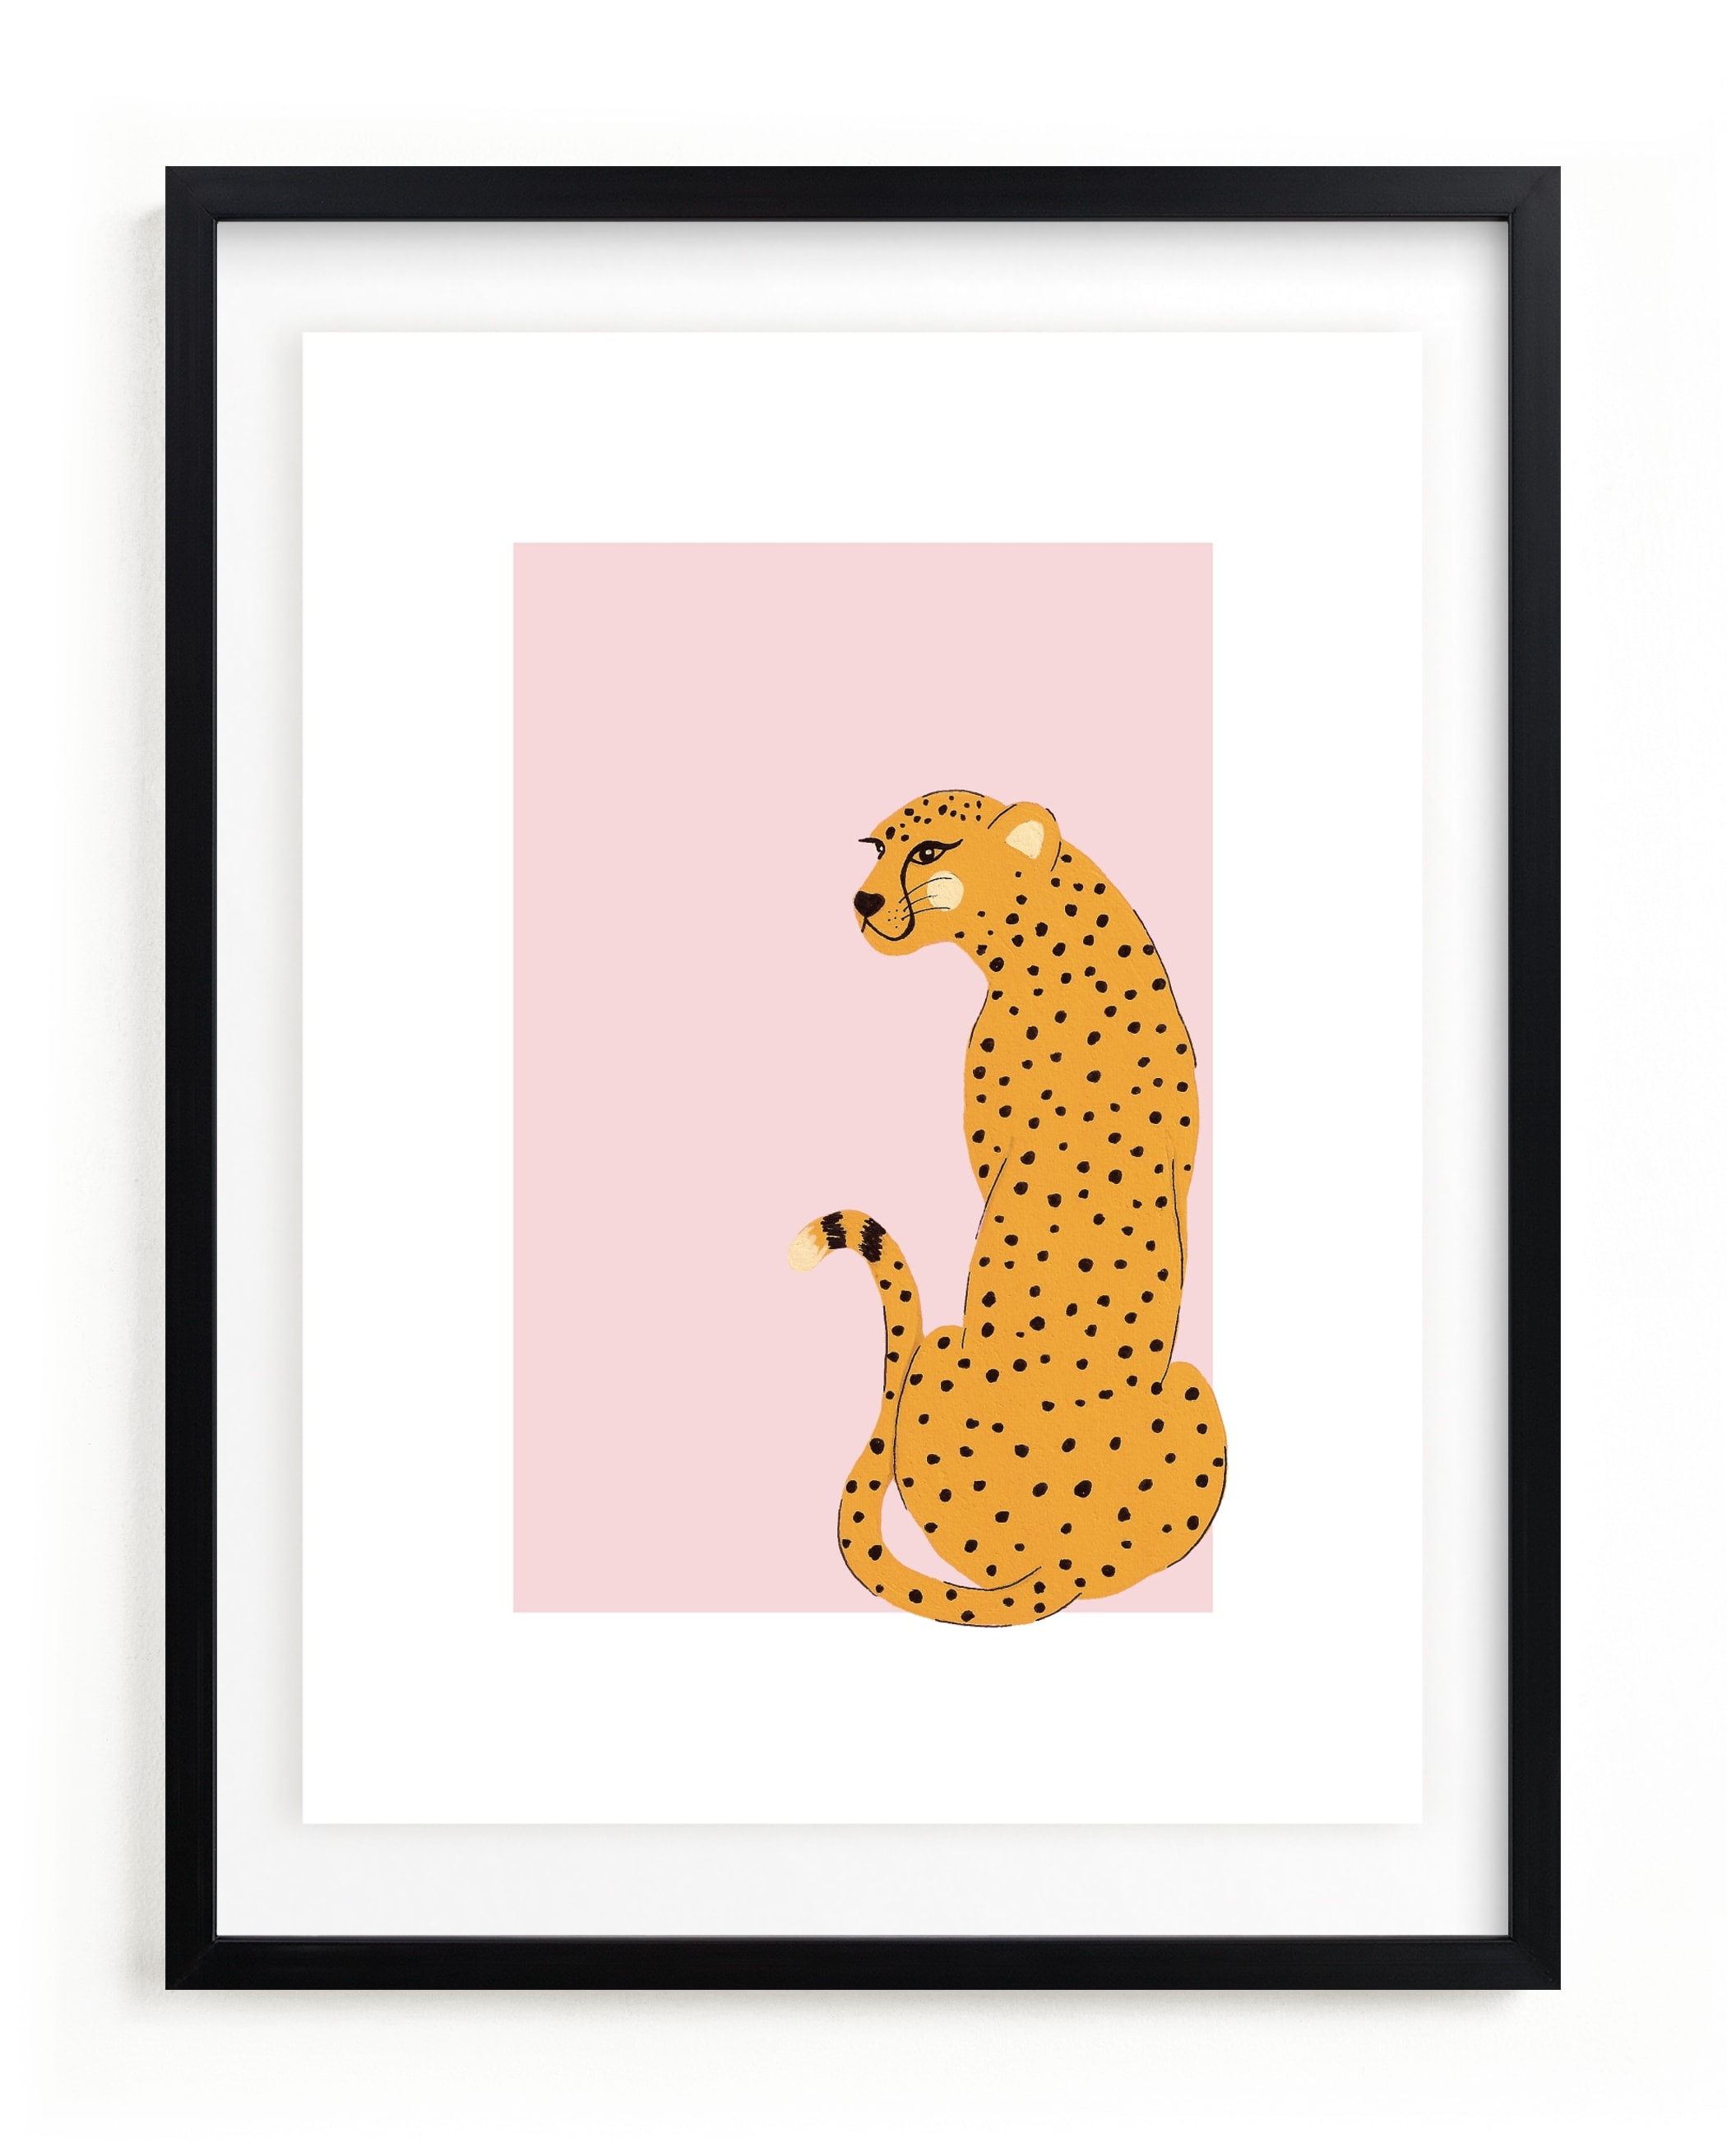 Gepard Children's Art Print